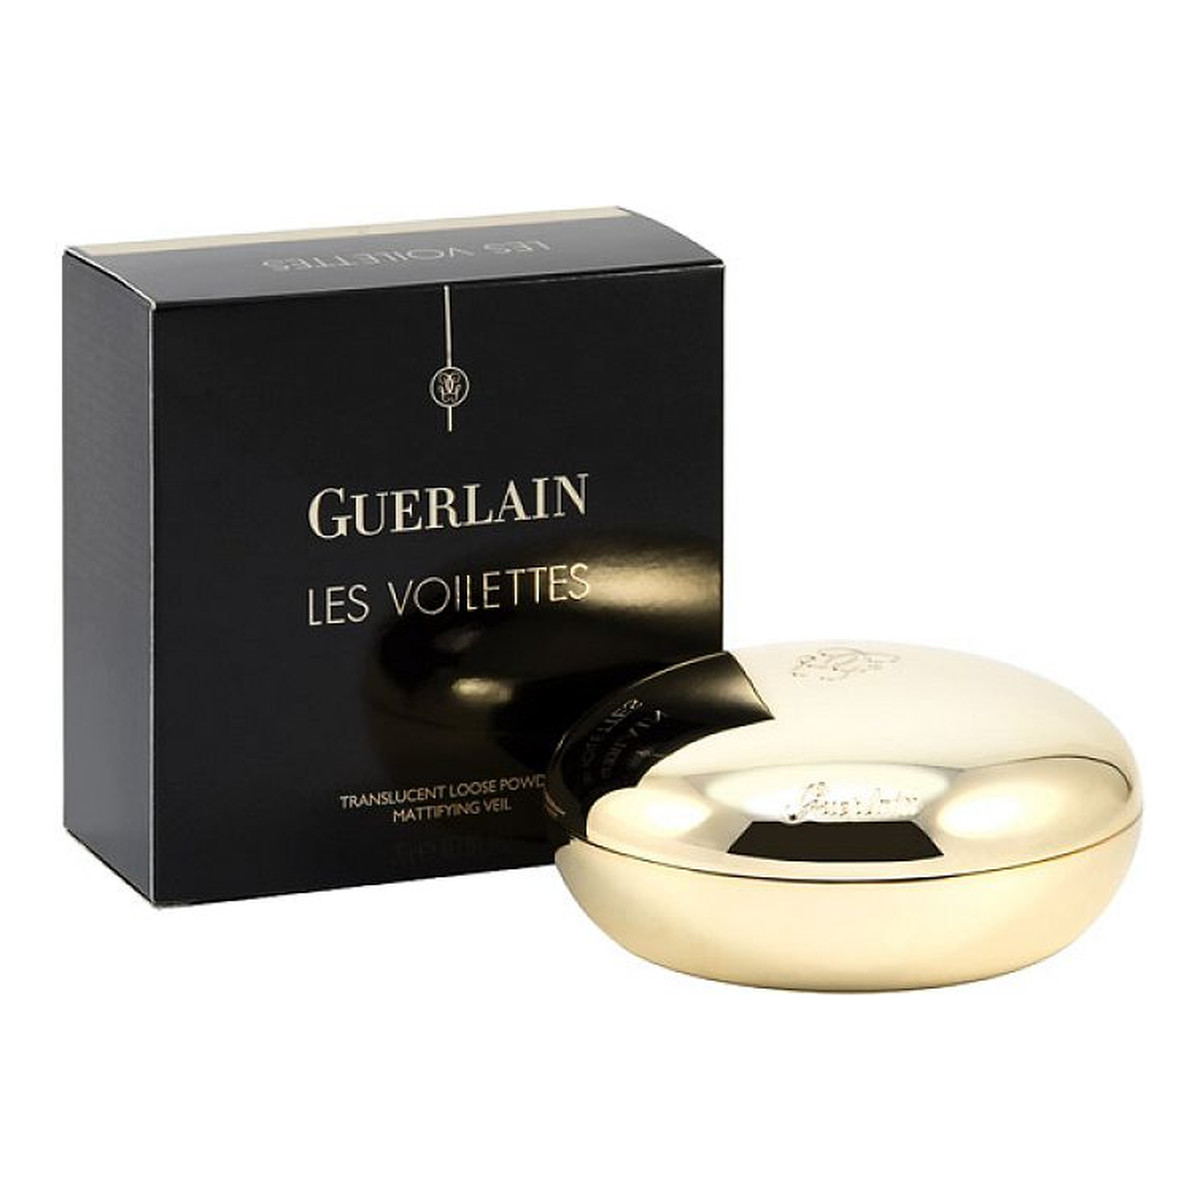 Guerlain Les Voilettes Translucent Loose Powder Puder sypki 20g